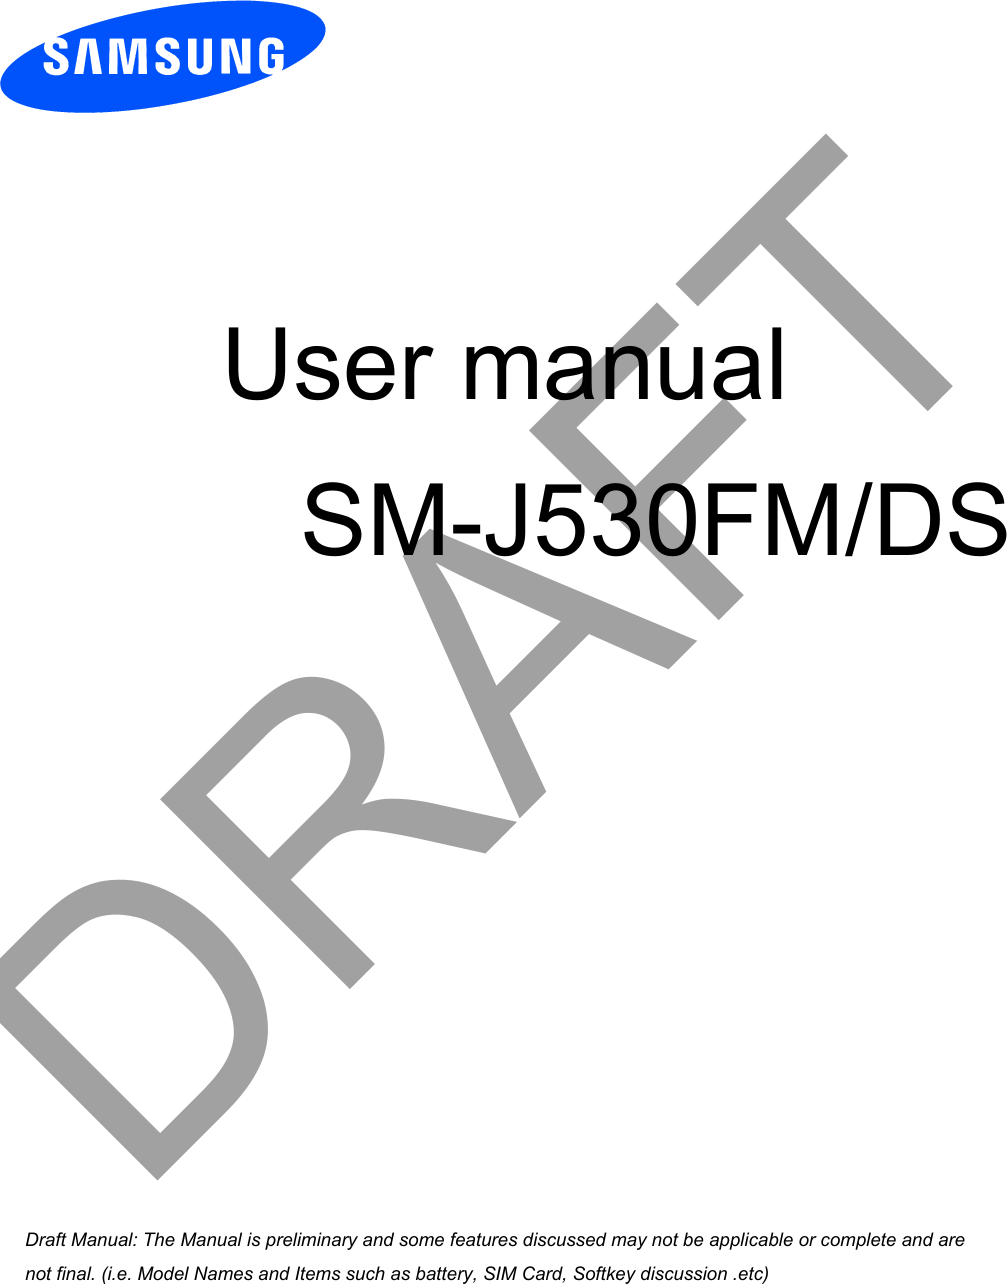  User manual SM-J530FM/DSa ana  ana  na and  a dd a n  aa   and a n na  d a and   a a  ad  dn DRAFT